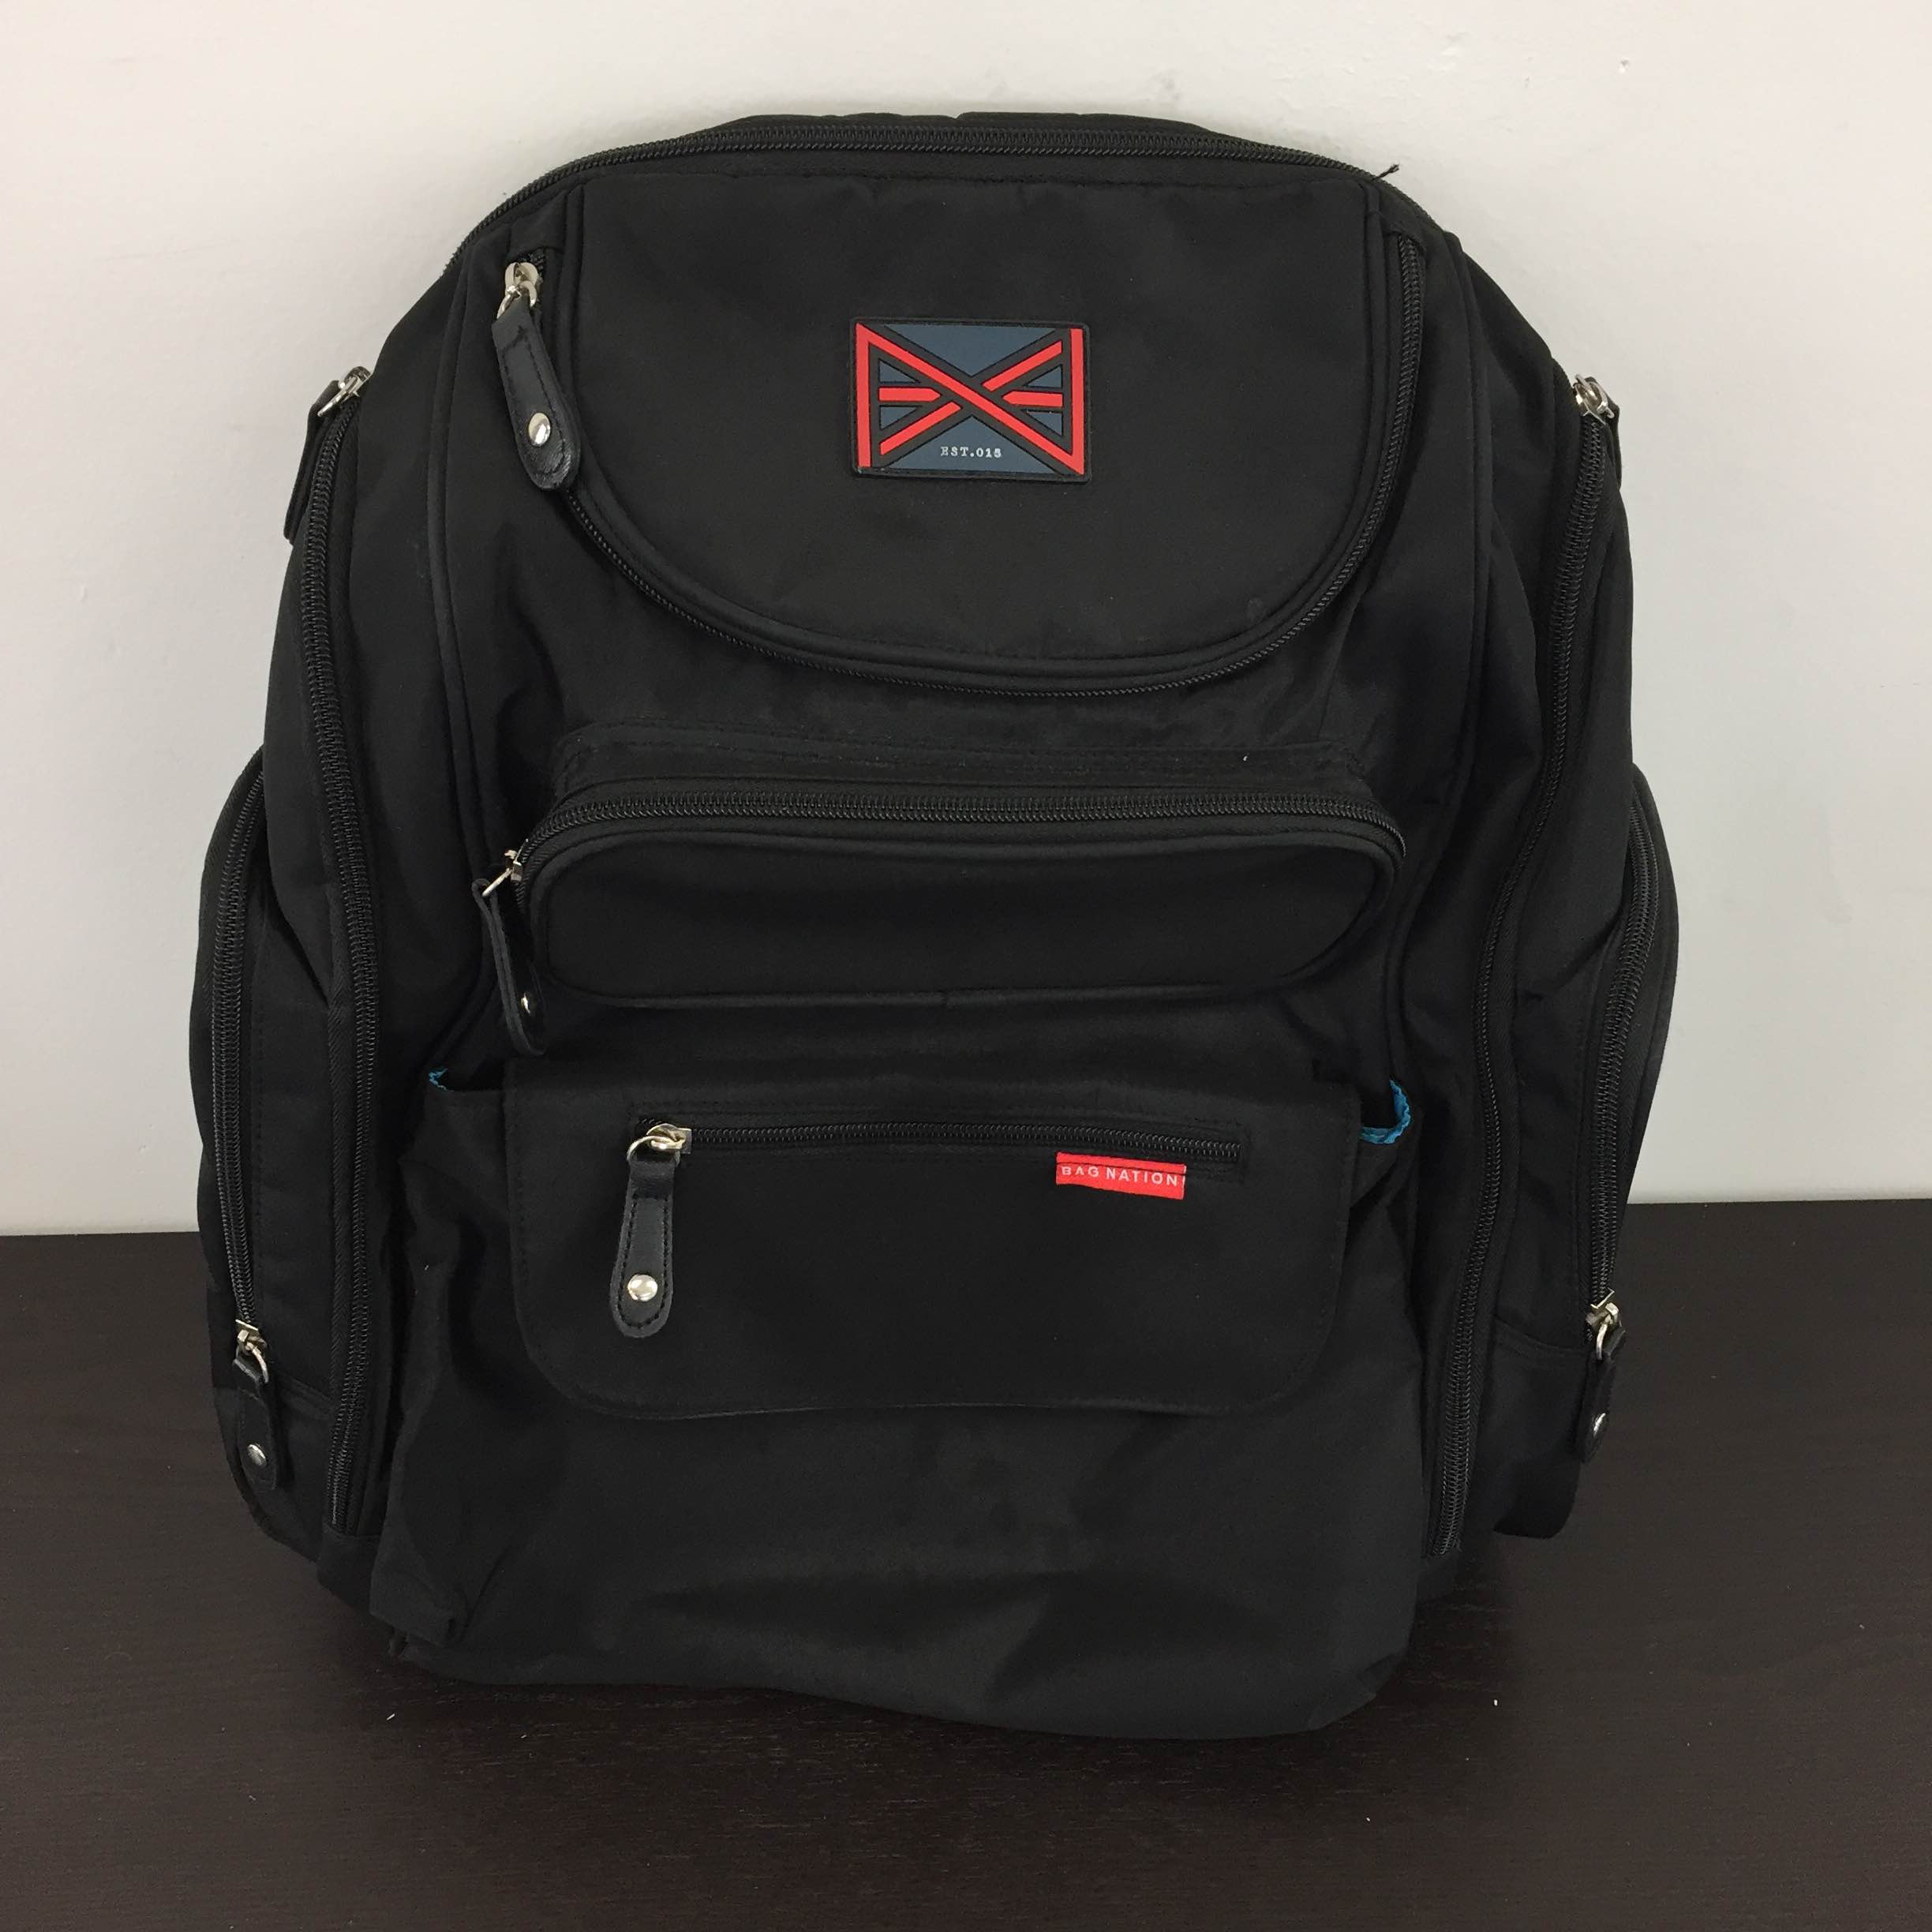 bag nation backpack